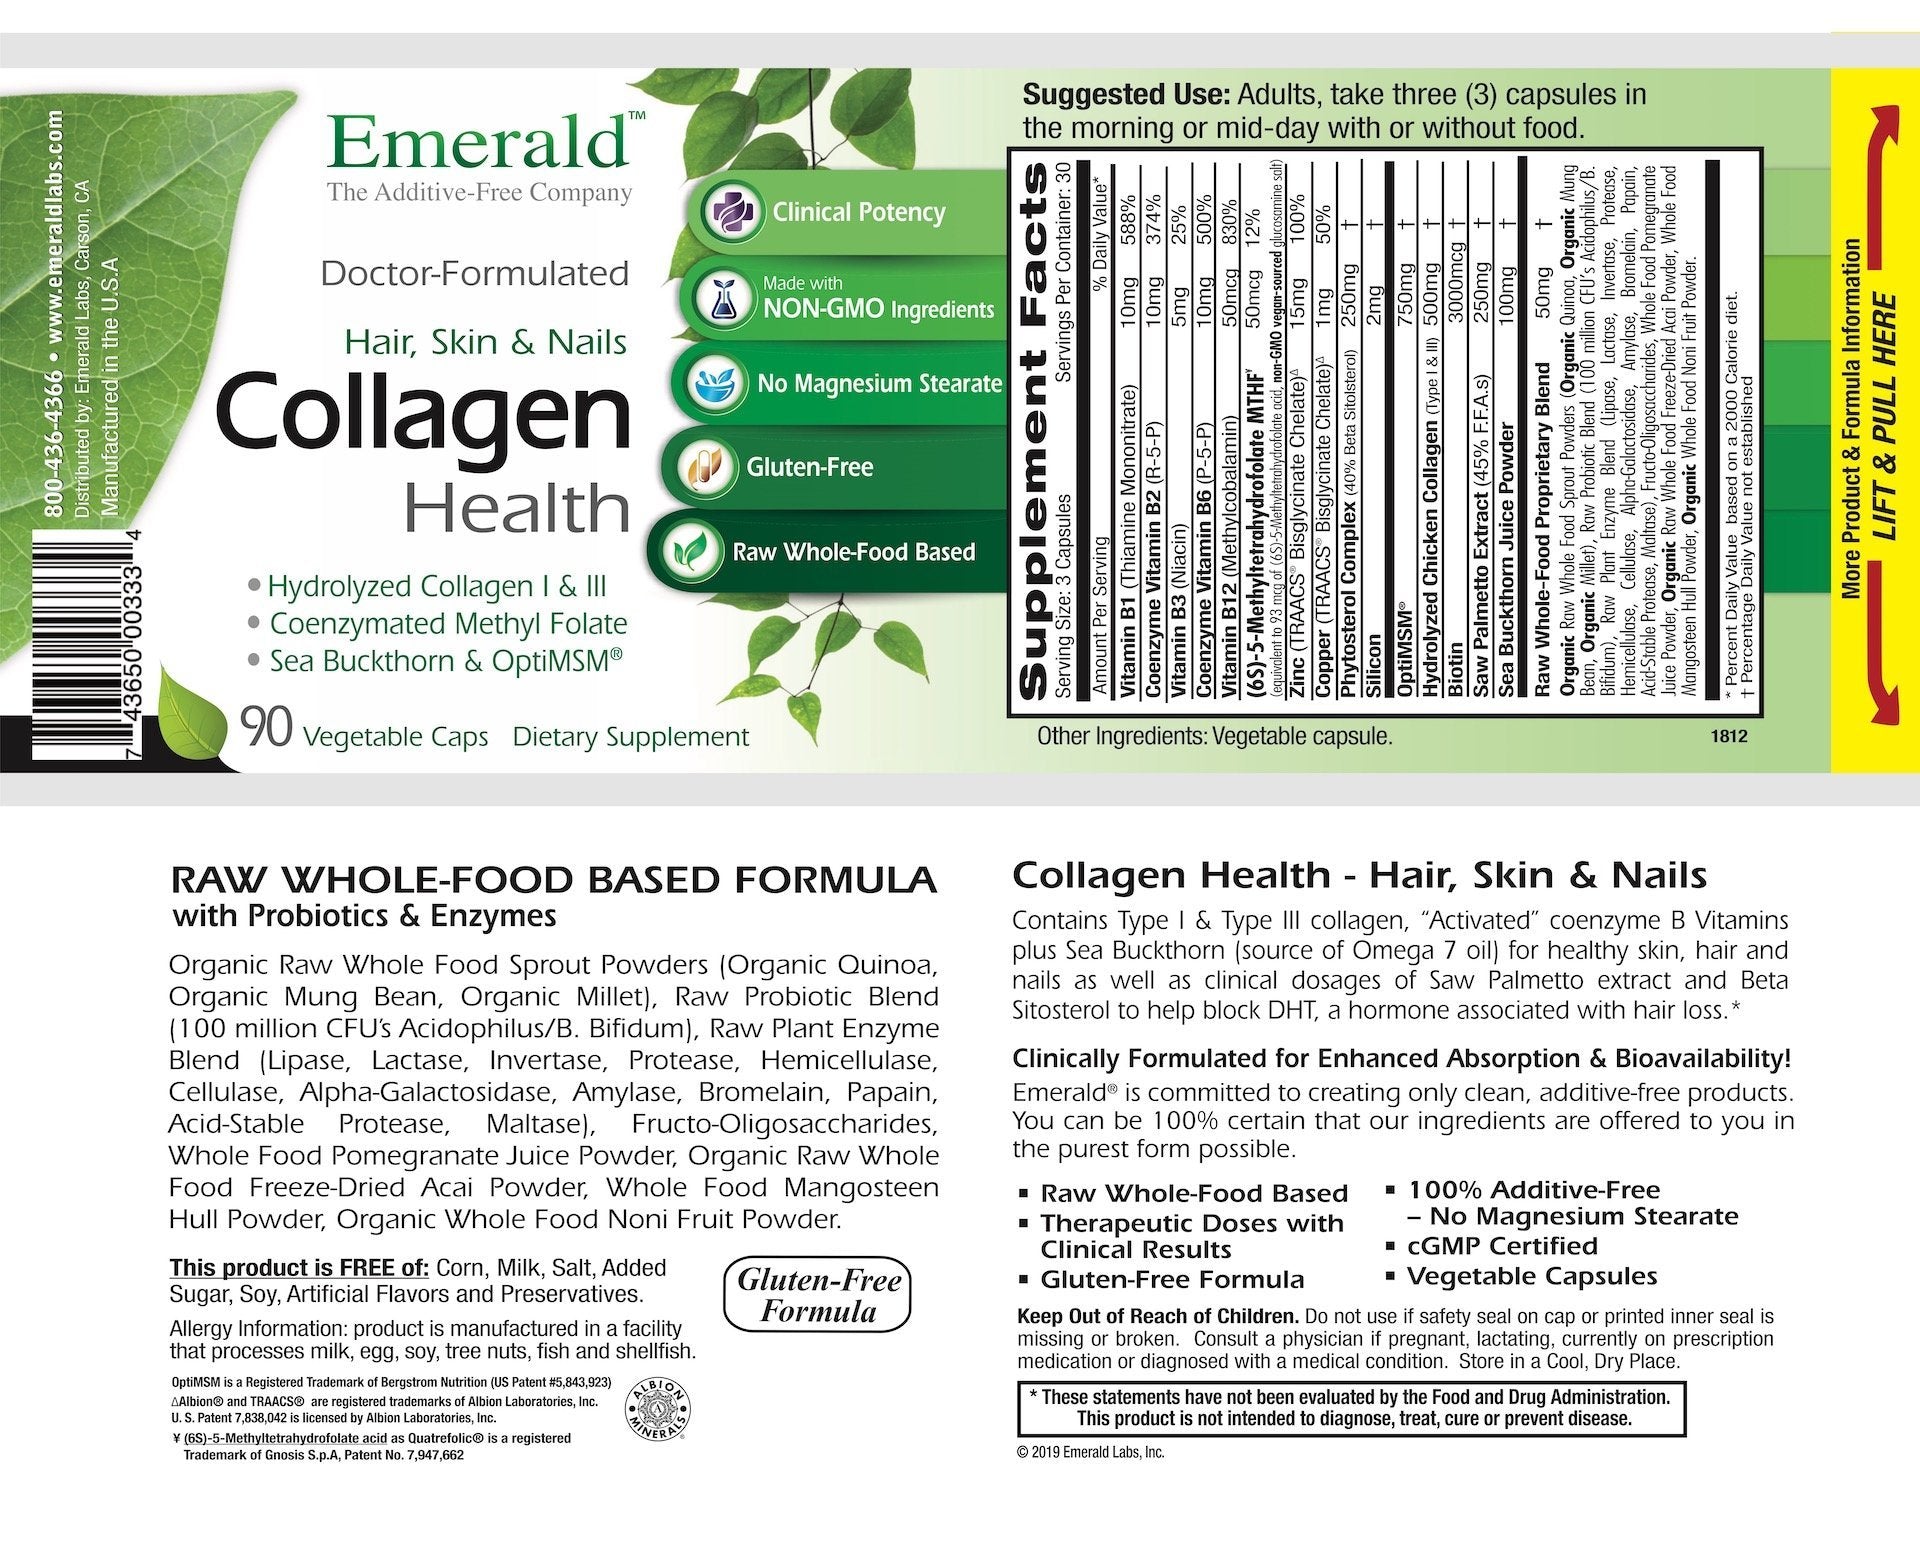 Emerald Collagen Health Label